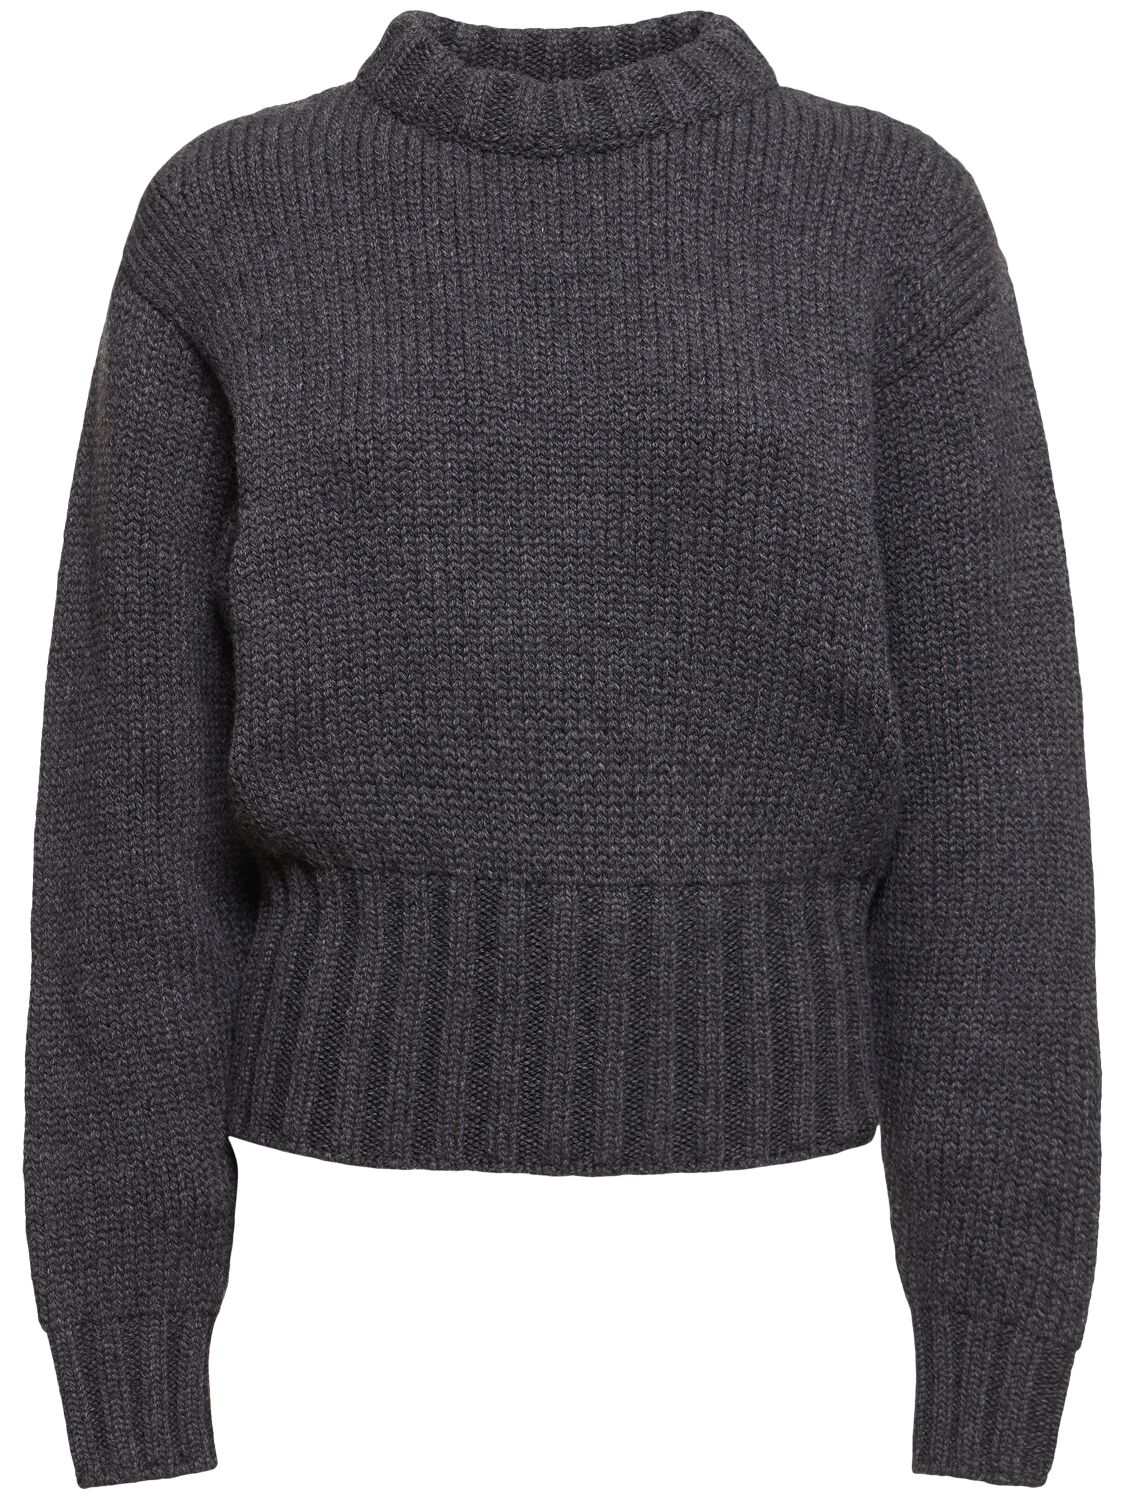 Wool Blend Knit Sweater